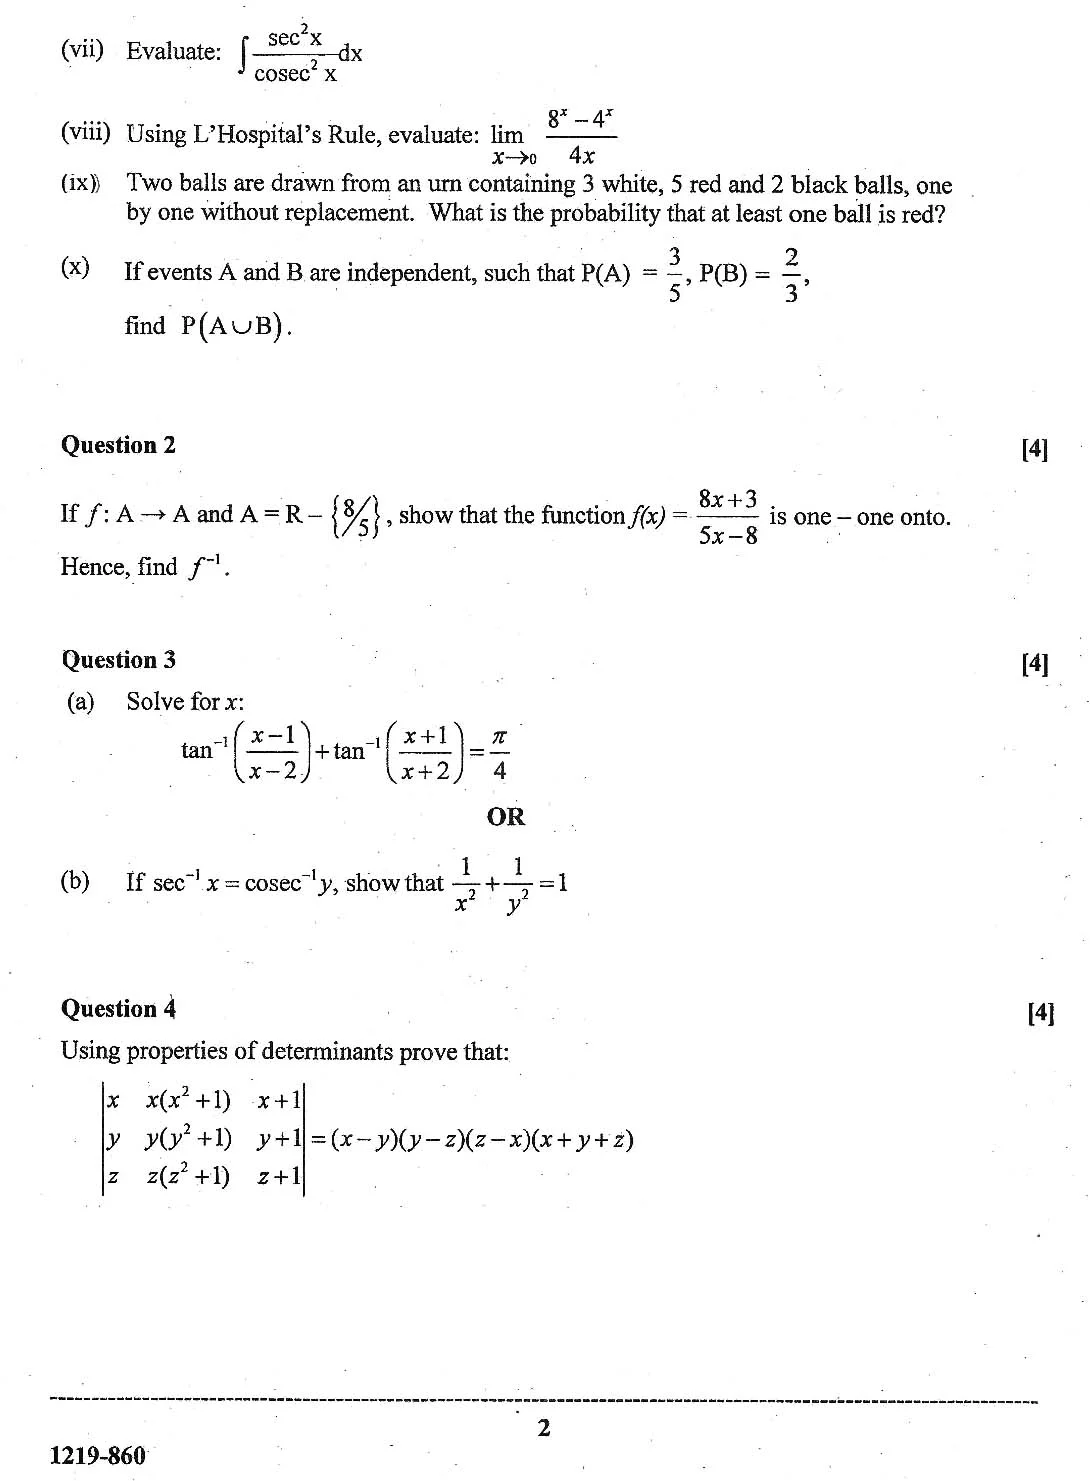 ISC Class 12 Mathematics 2019 Question Paper